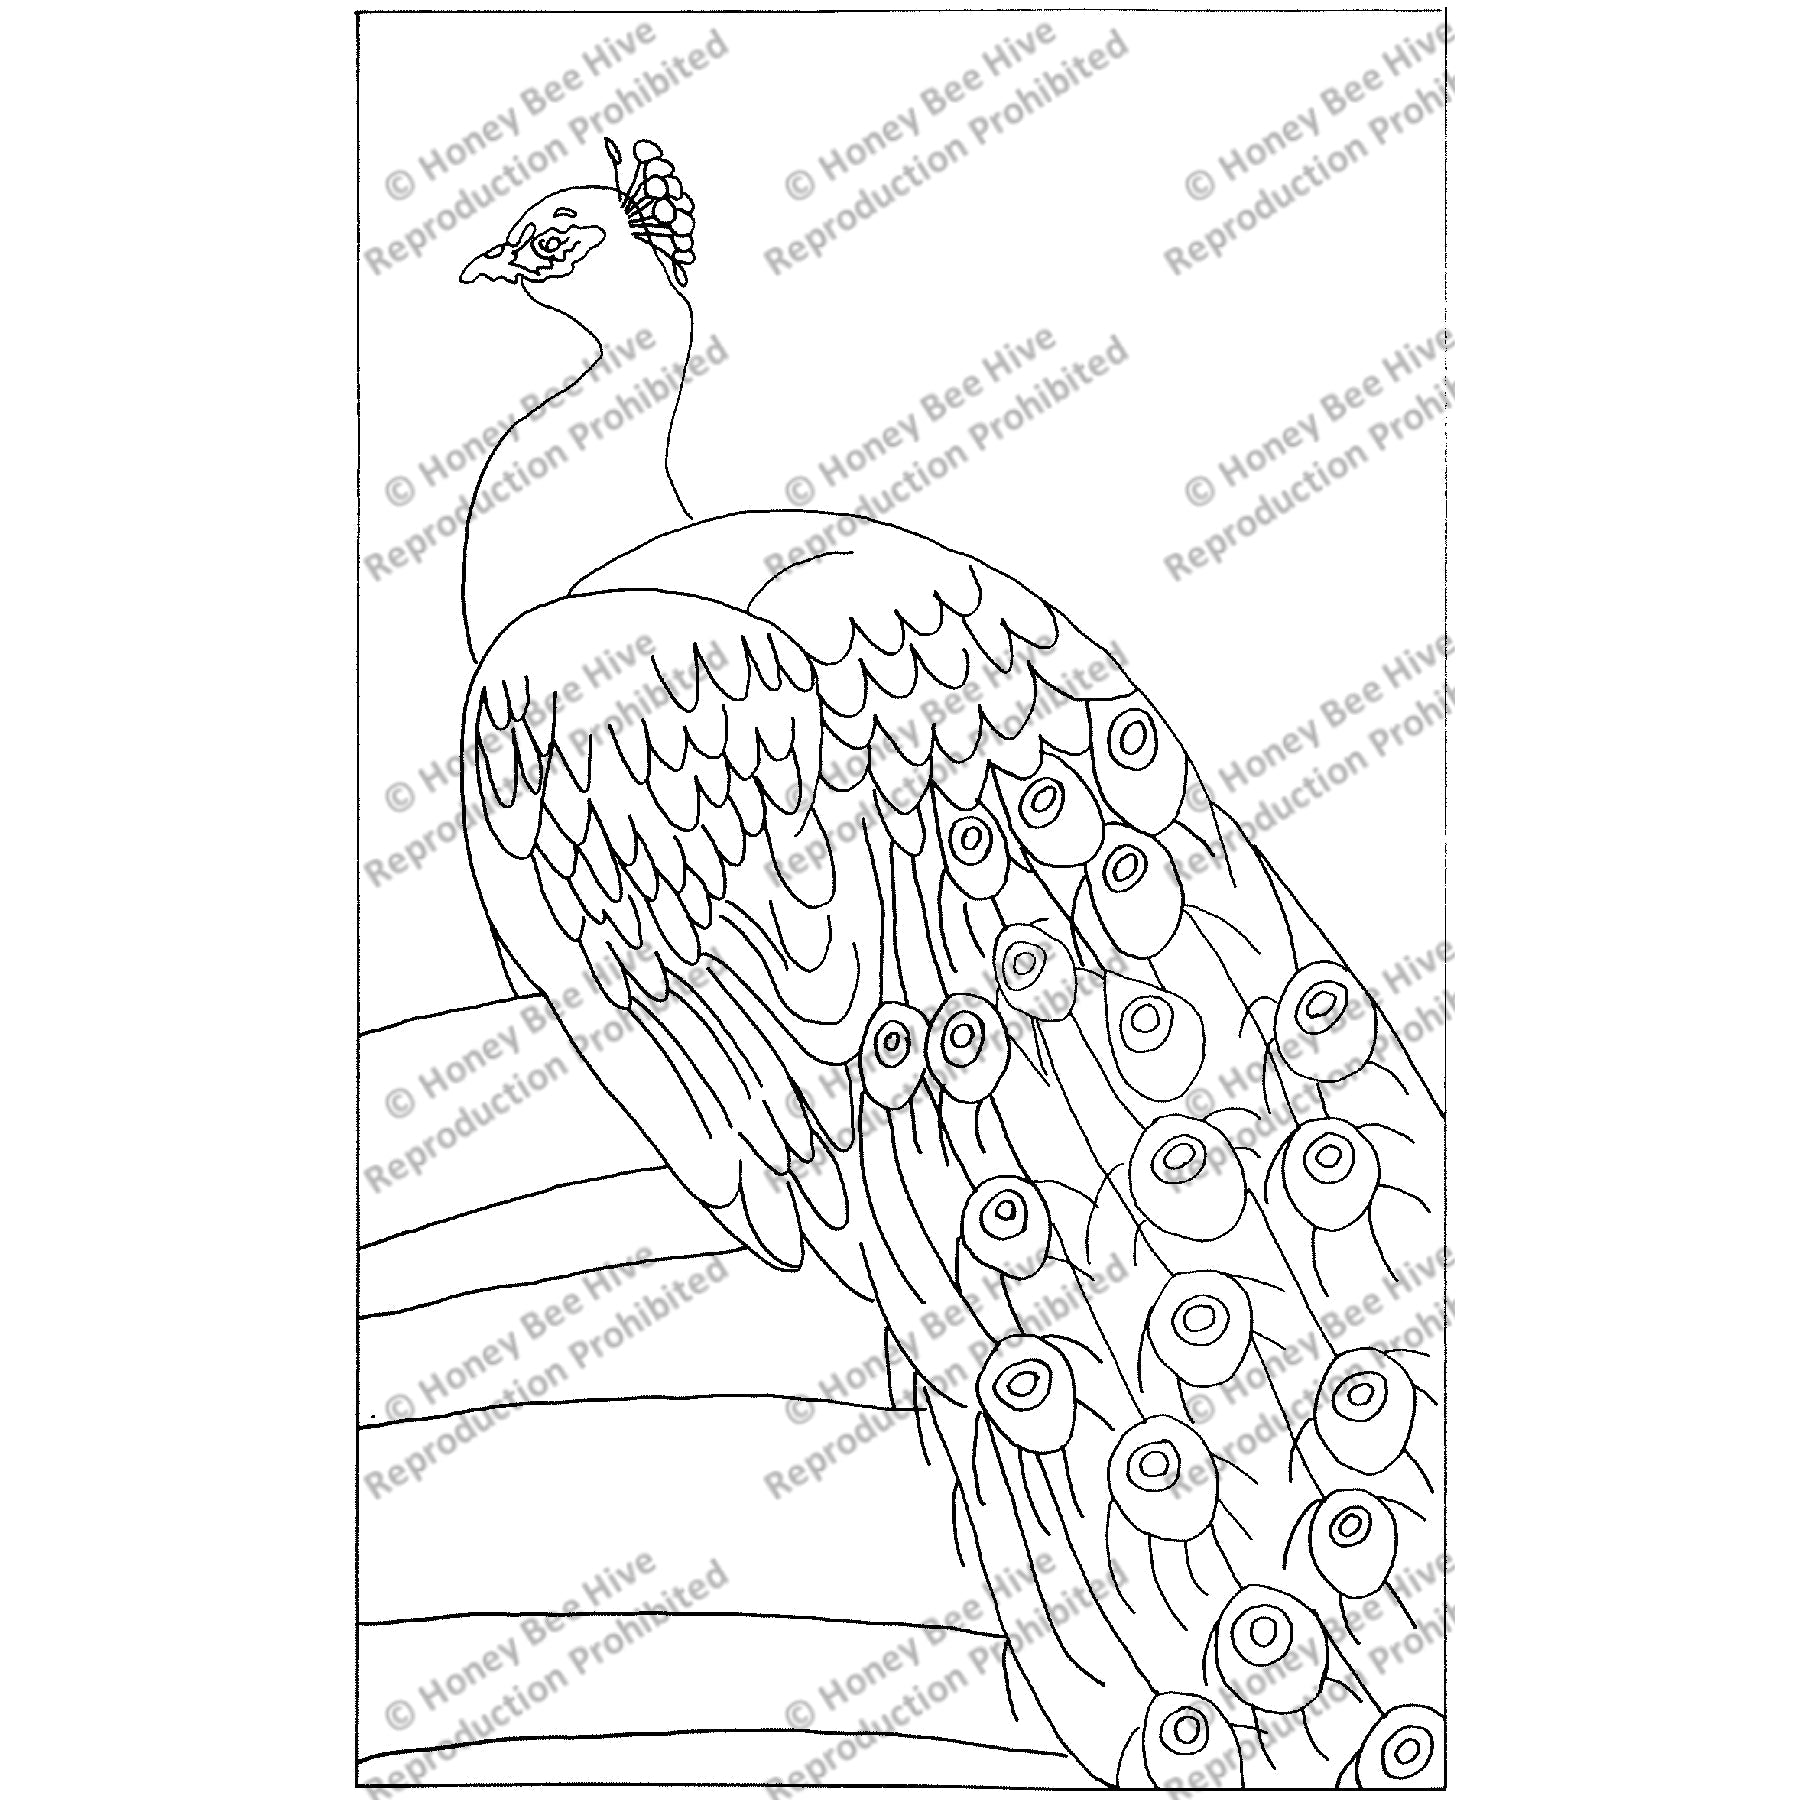 Proud Peacock, rug hooking pattern